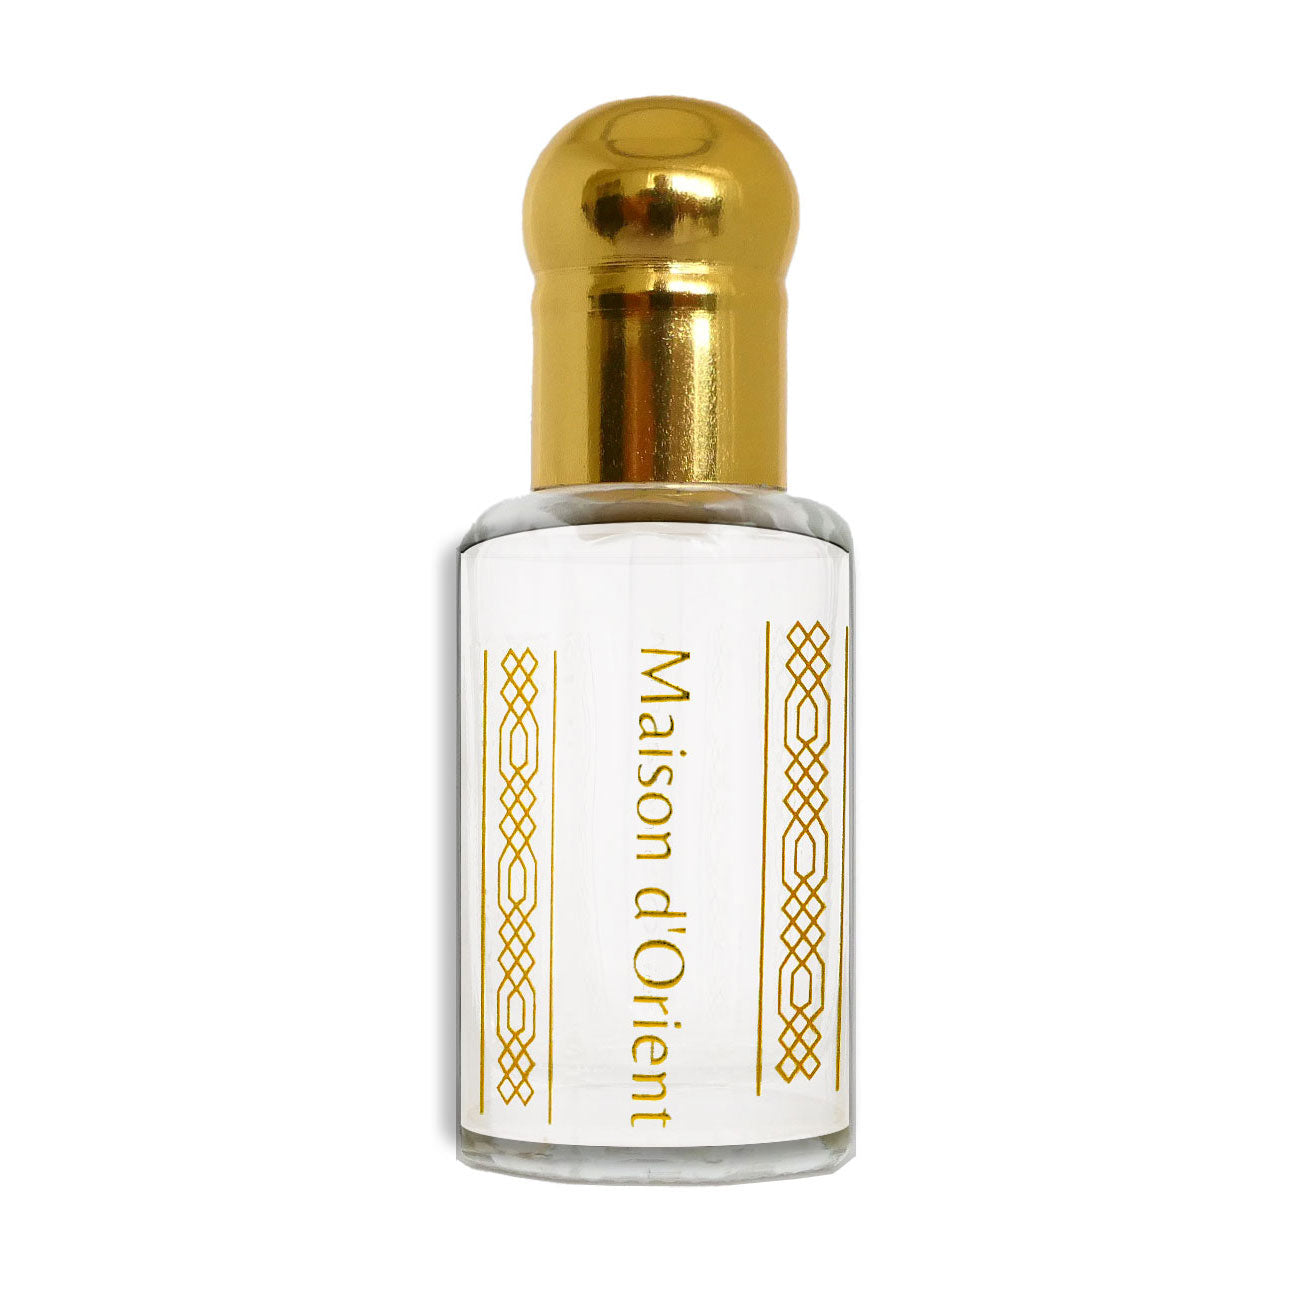 Vanilla Musk Attar Perfume - Soft Blend of Musk + Vanilla